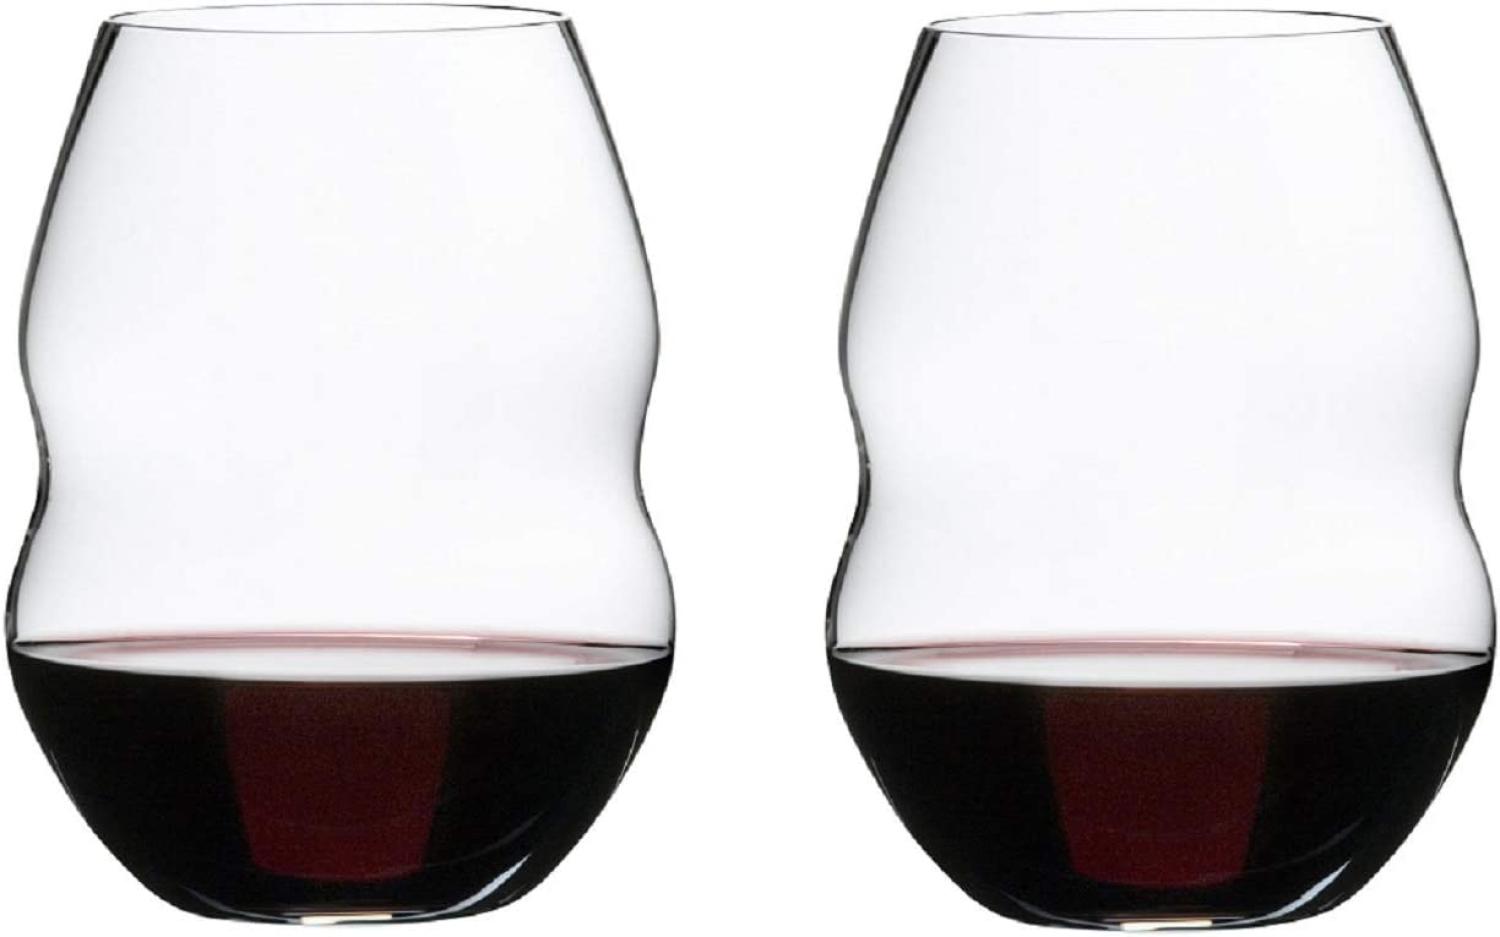 Riedel Swirl Rotwein, Rotweinglas, Weinglas, hochwertiges Glas, 580 ml, 2er Set, 0450/30 Bild 1